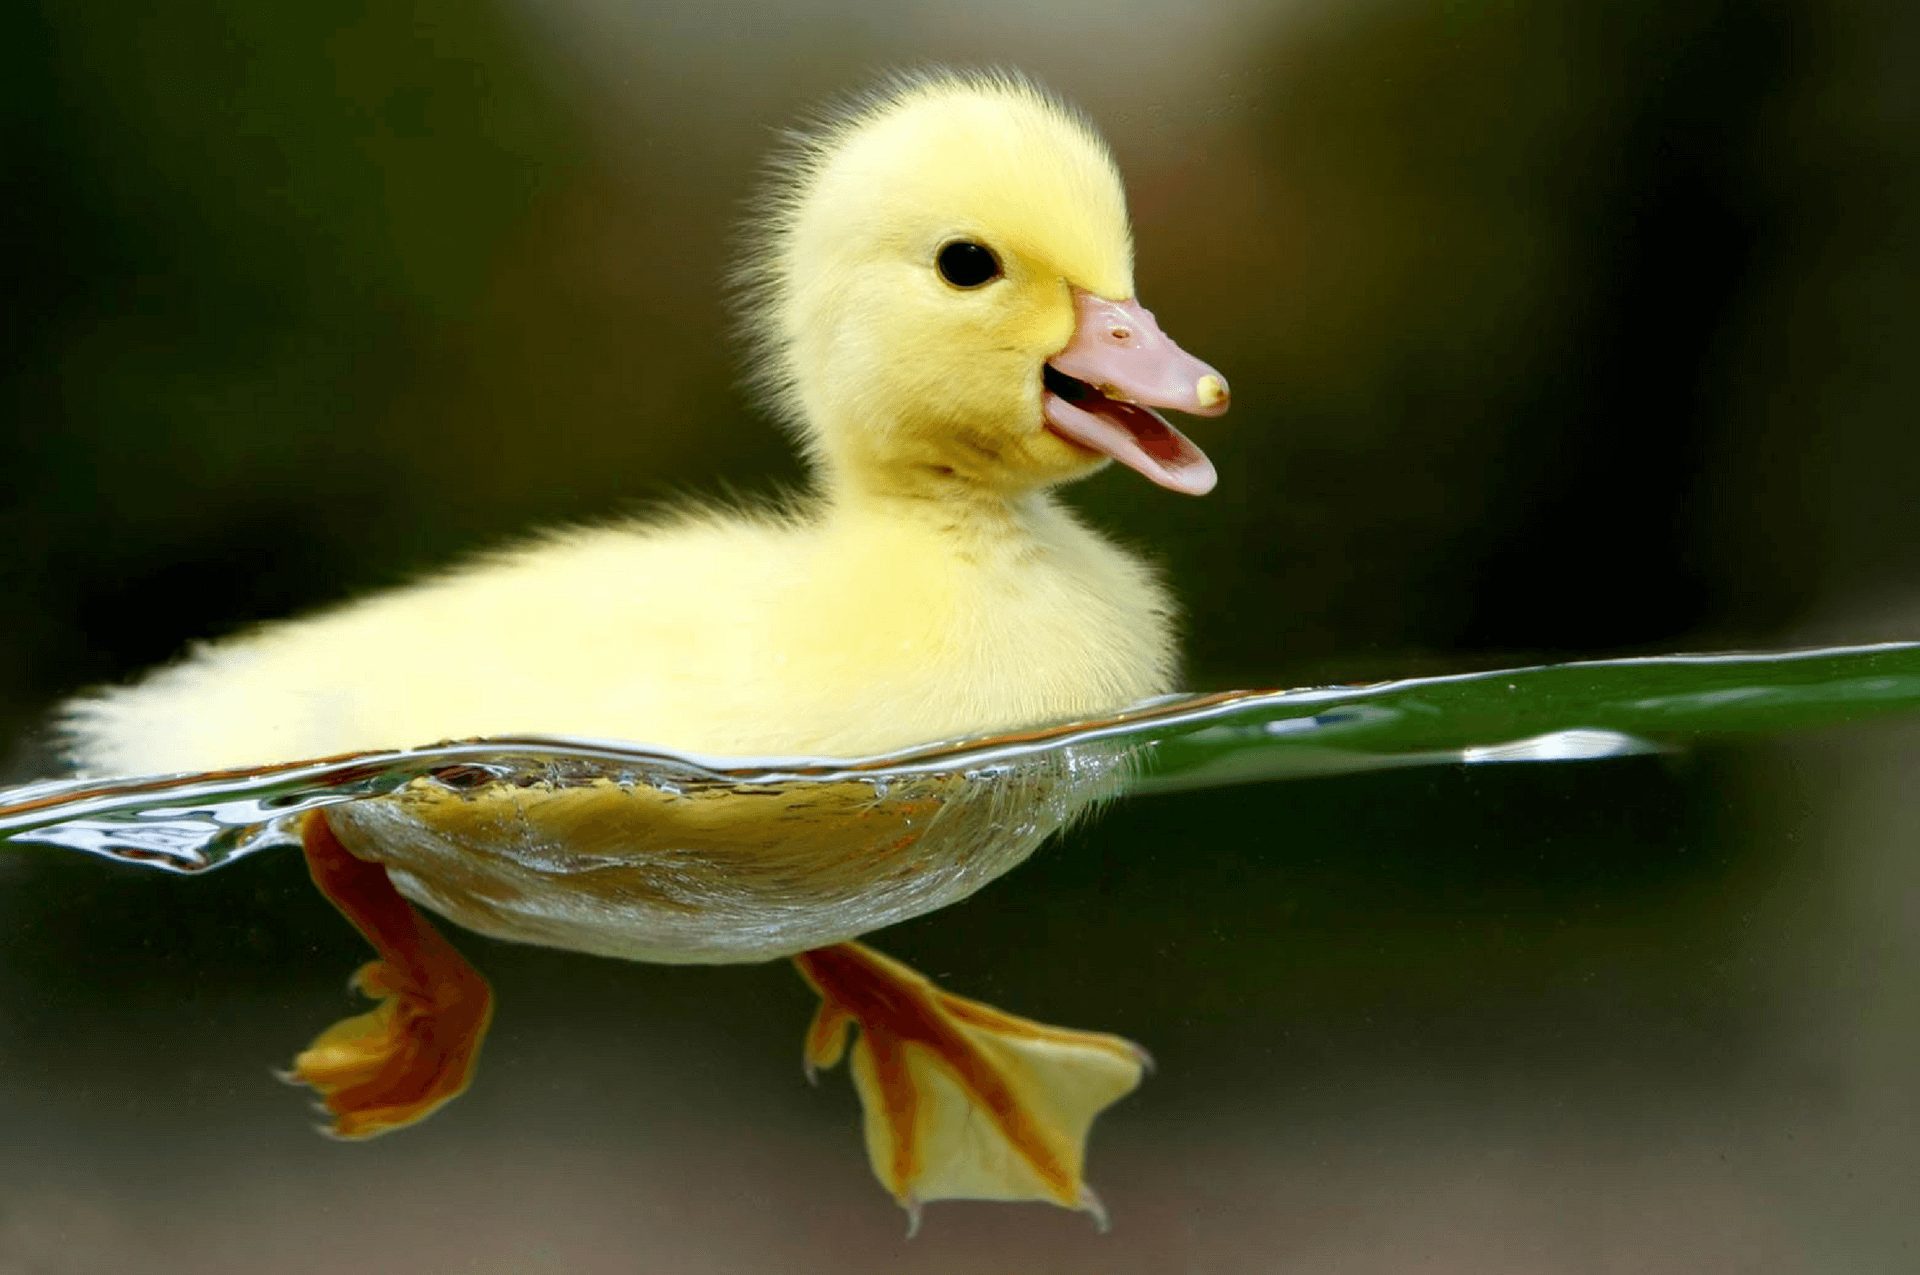 Beberapa tips memelihara bebek agar tidak terkena serangan penyakit